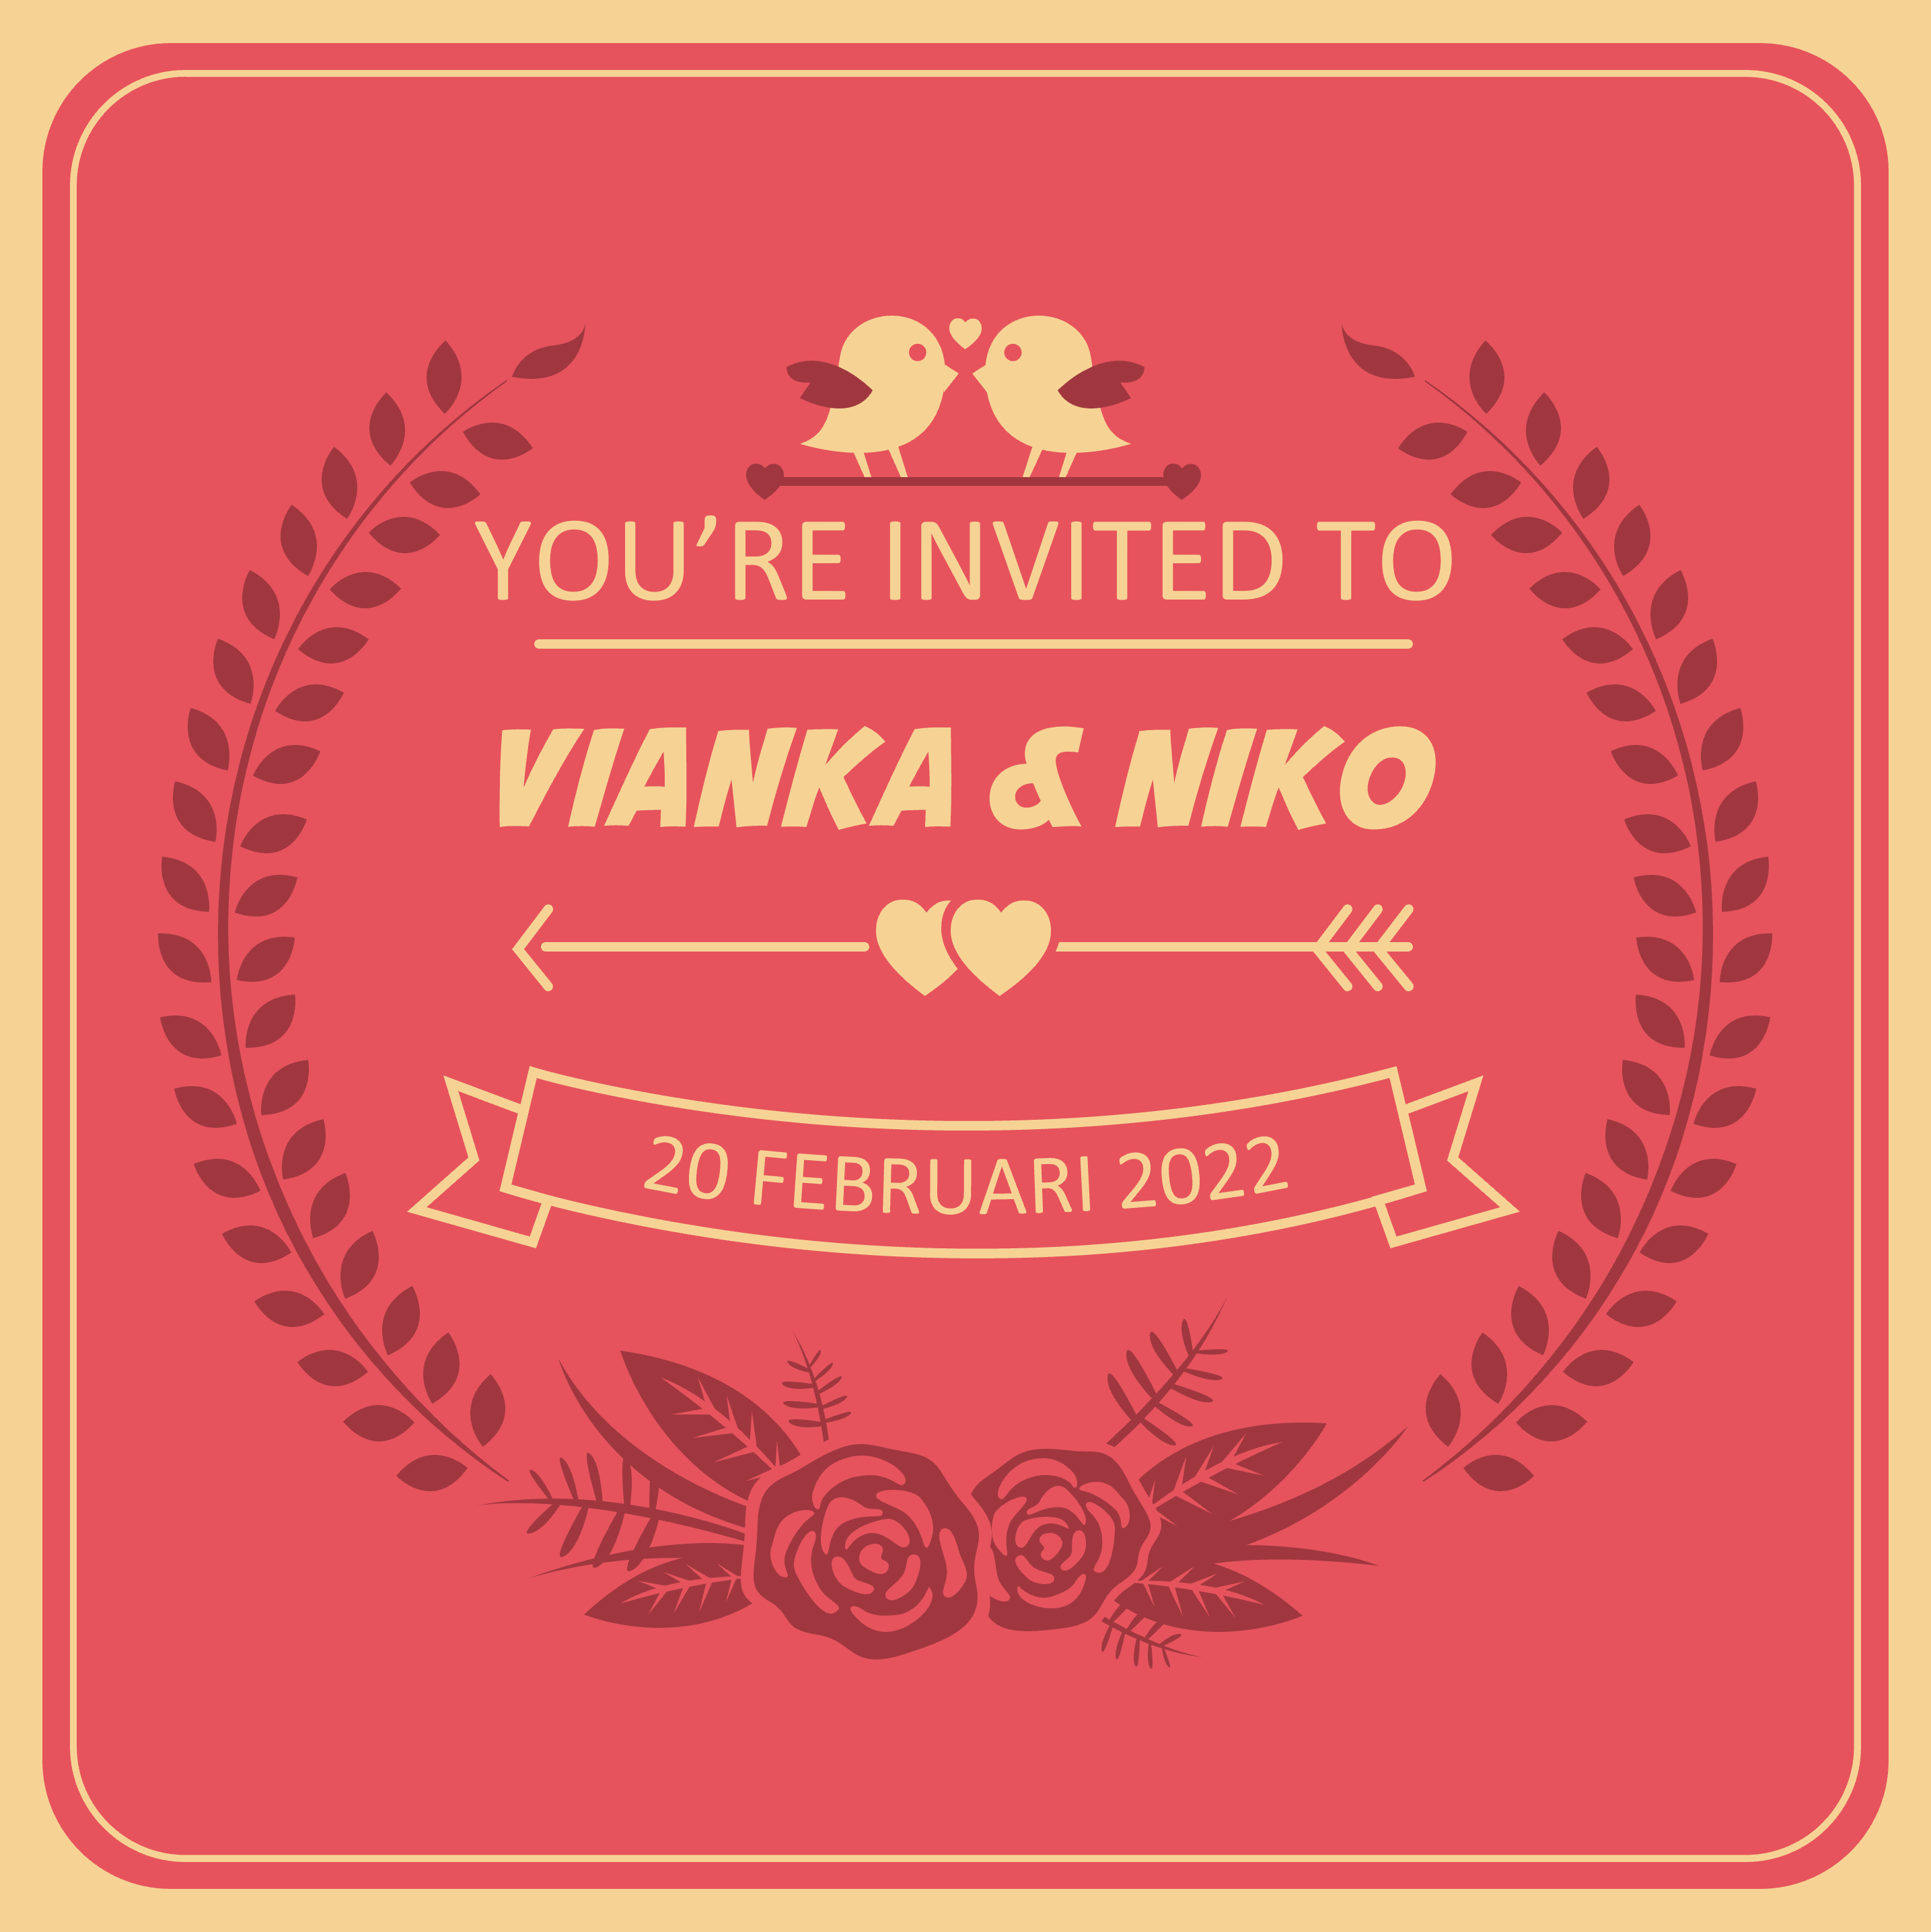 Vianka & Niko